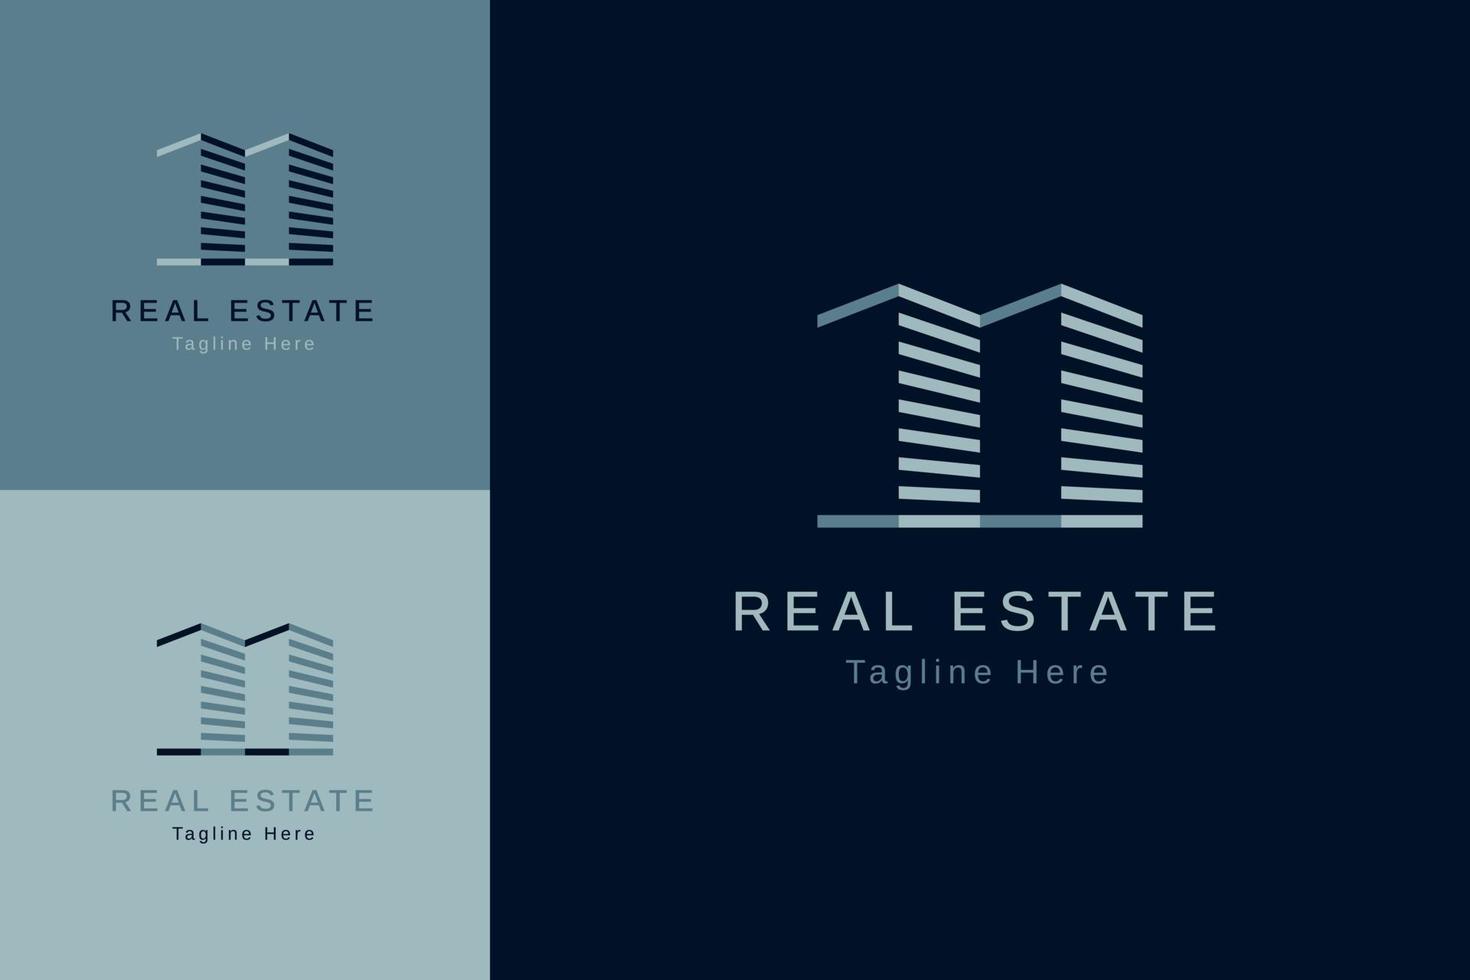 conjunto de plantilla de diseño de vector de logotipo de propiedad inmobiliaria con estilo de color diferente